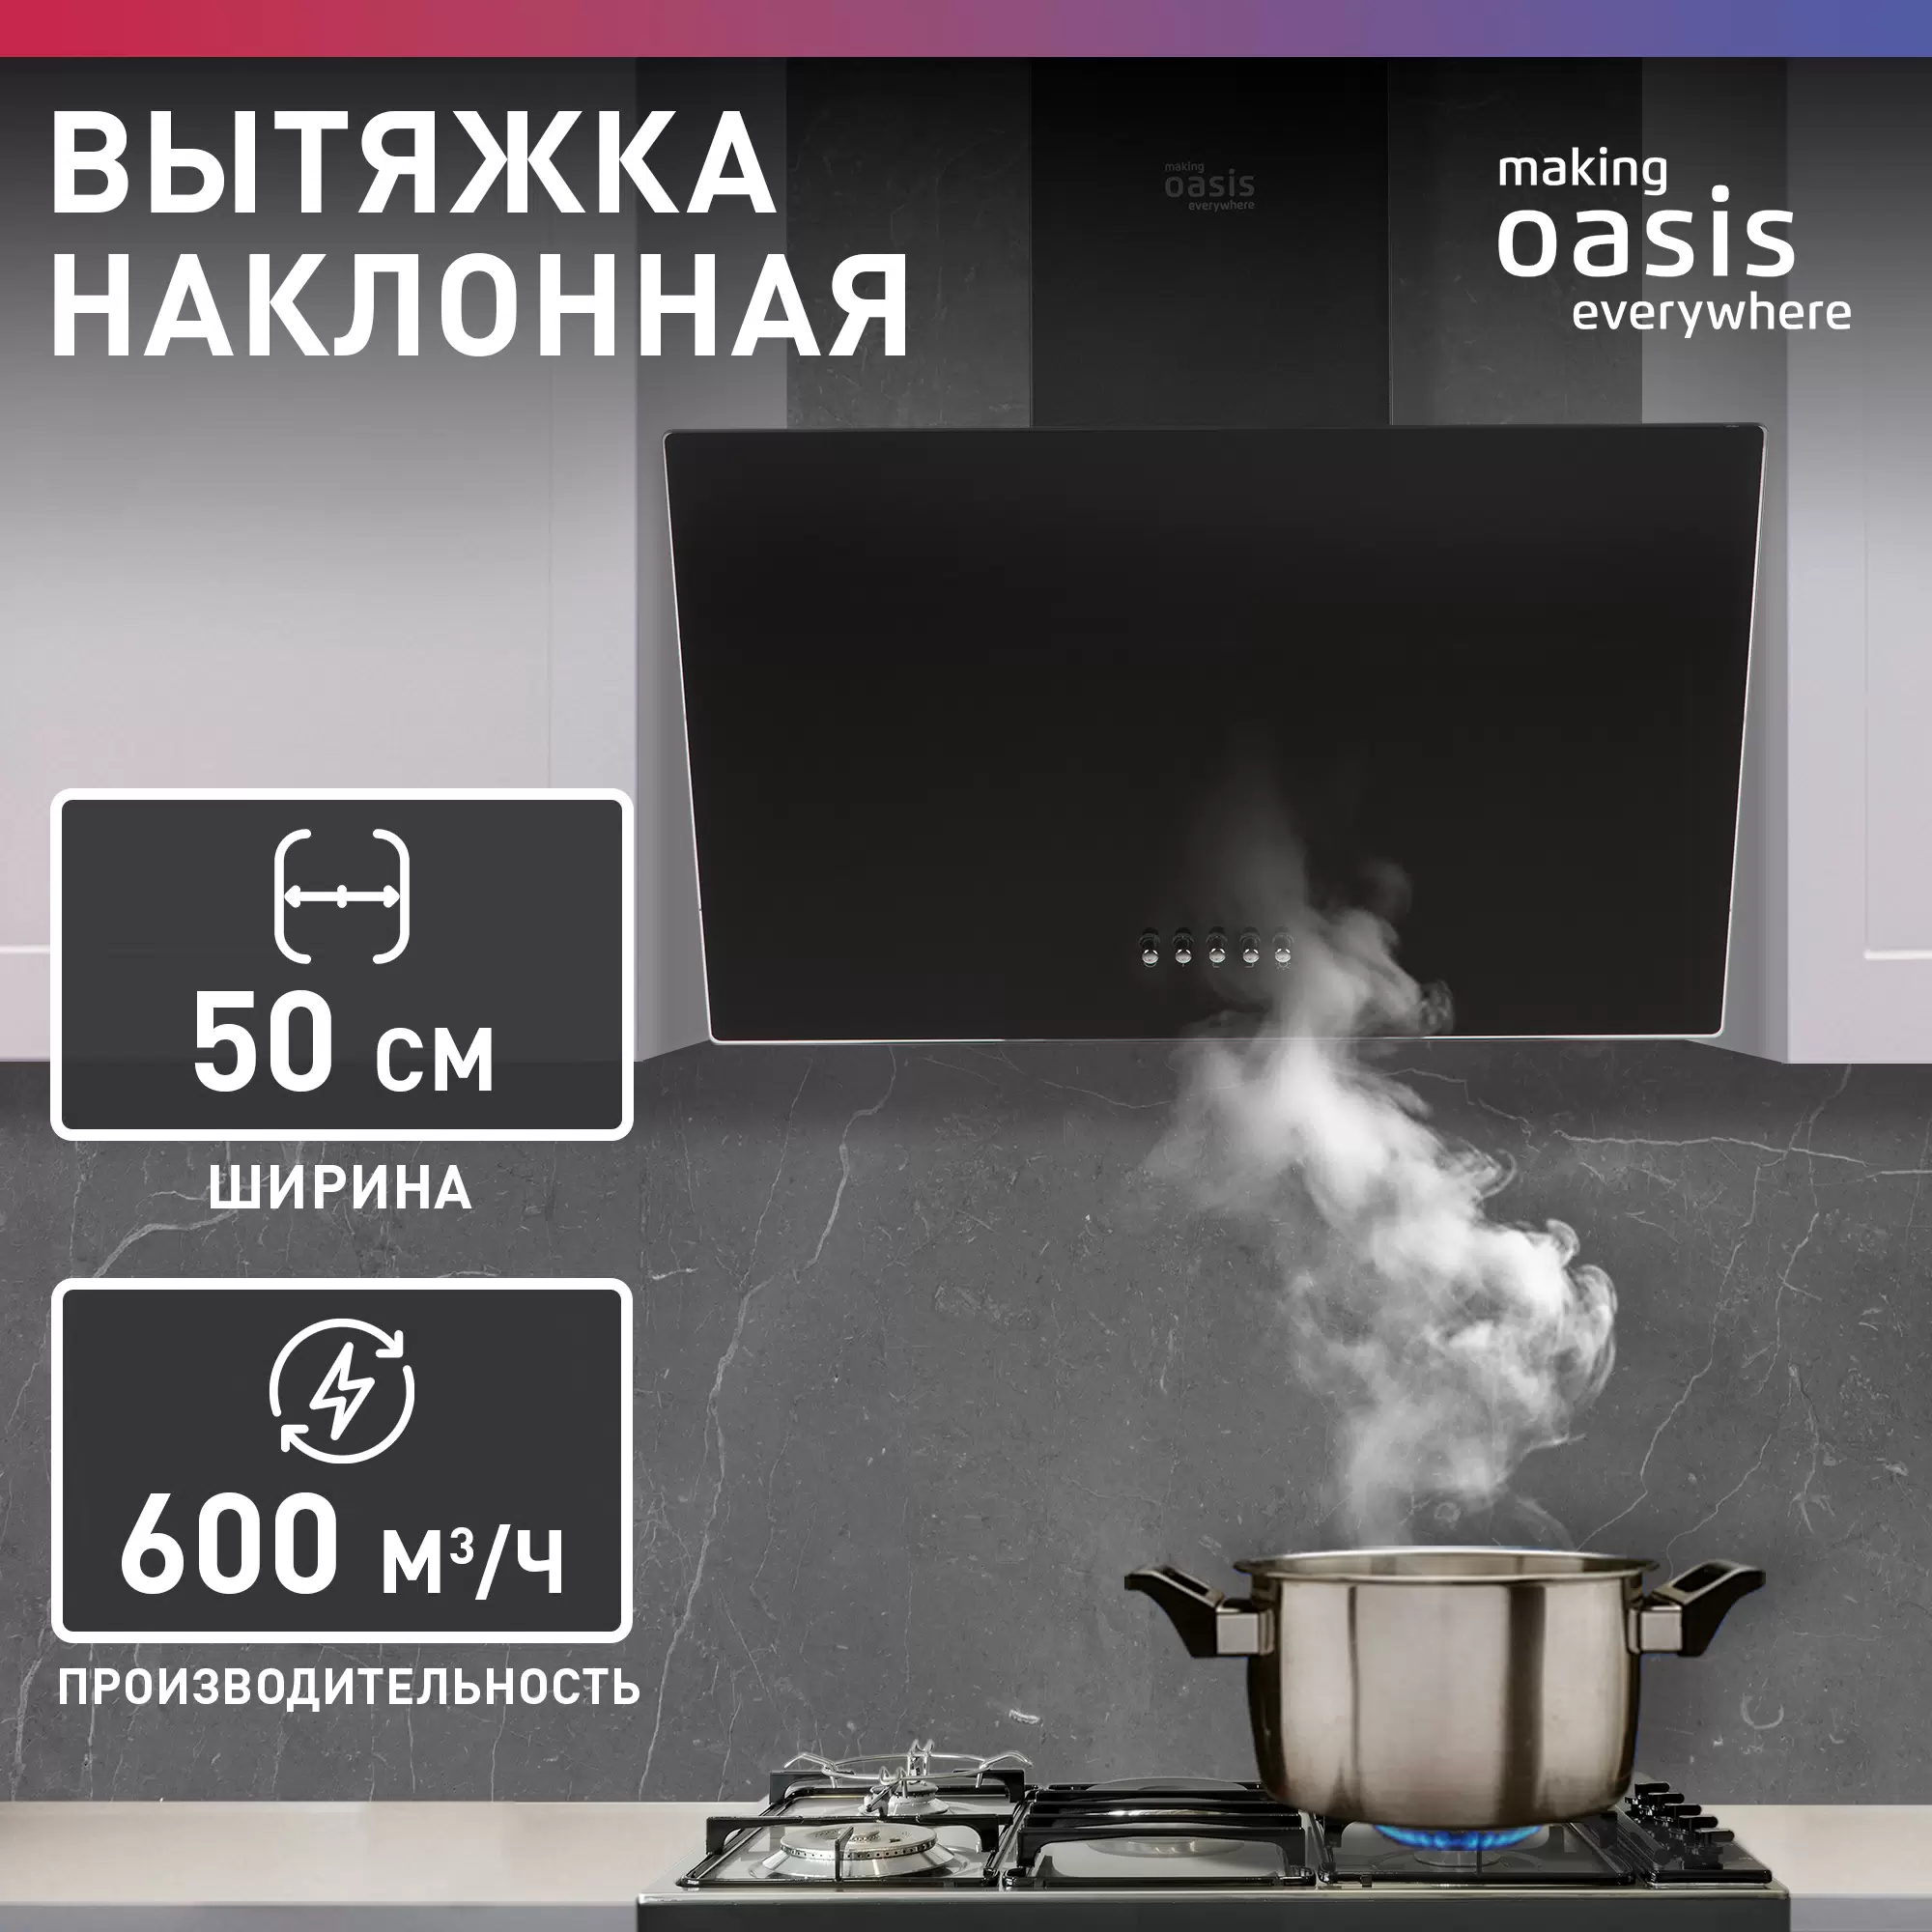 Вытяжка кухонная наклонная making Oasis everywhere NP-50B - VLARNIKA в Донецке